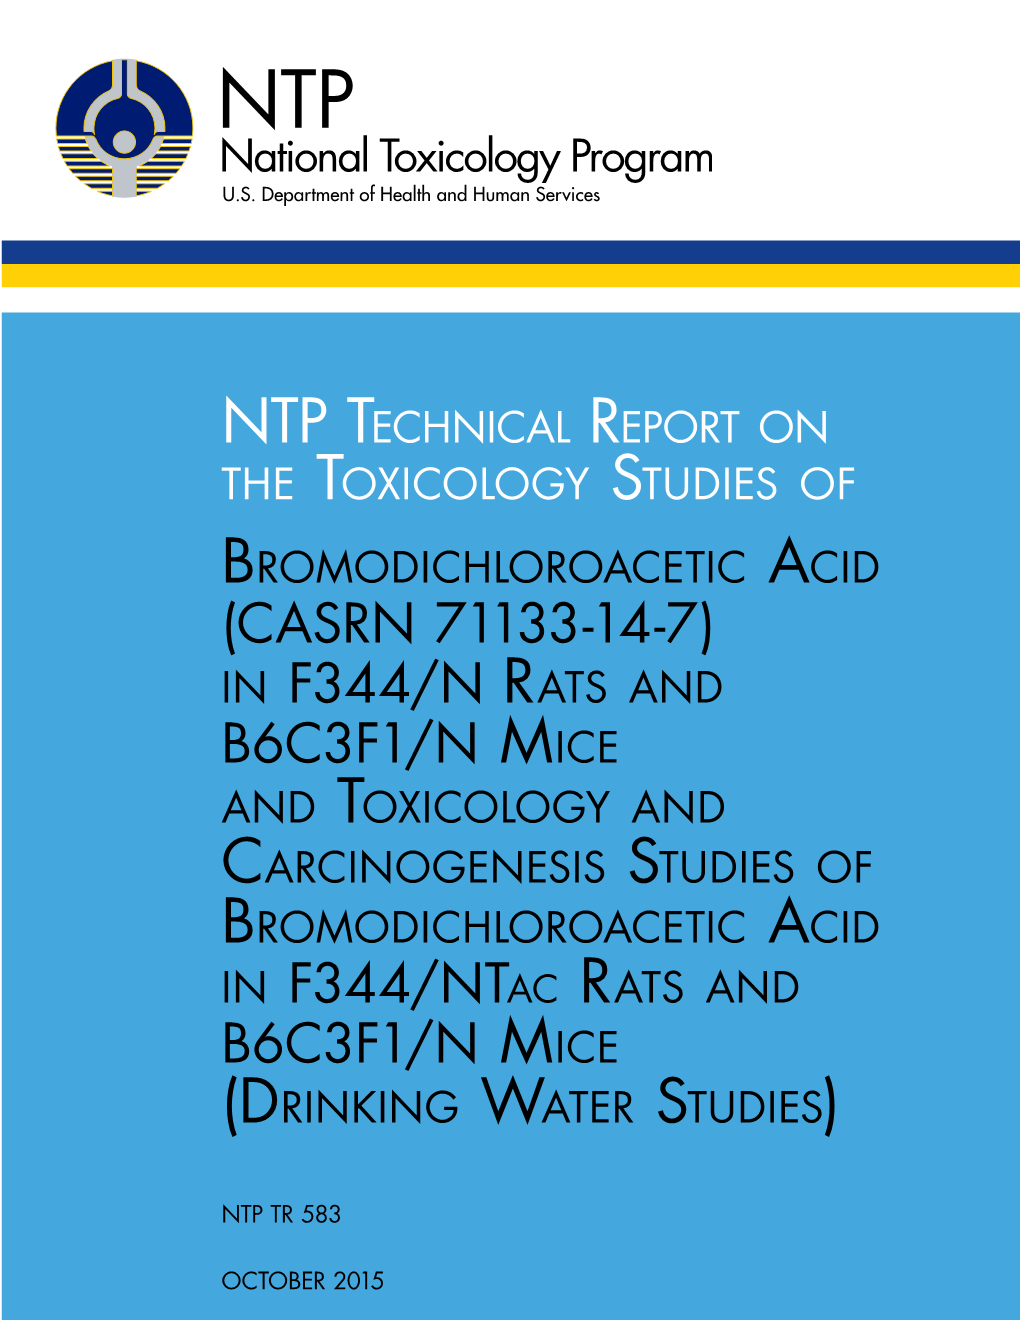 TR-583: Bromodichloroacetic Acid (CASRN 71133-14-7) in F344/N